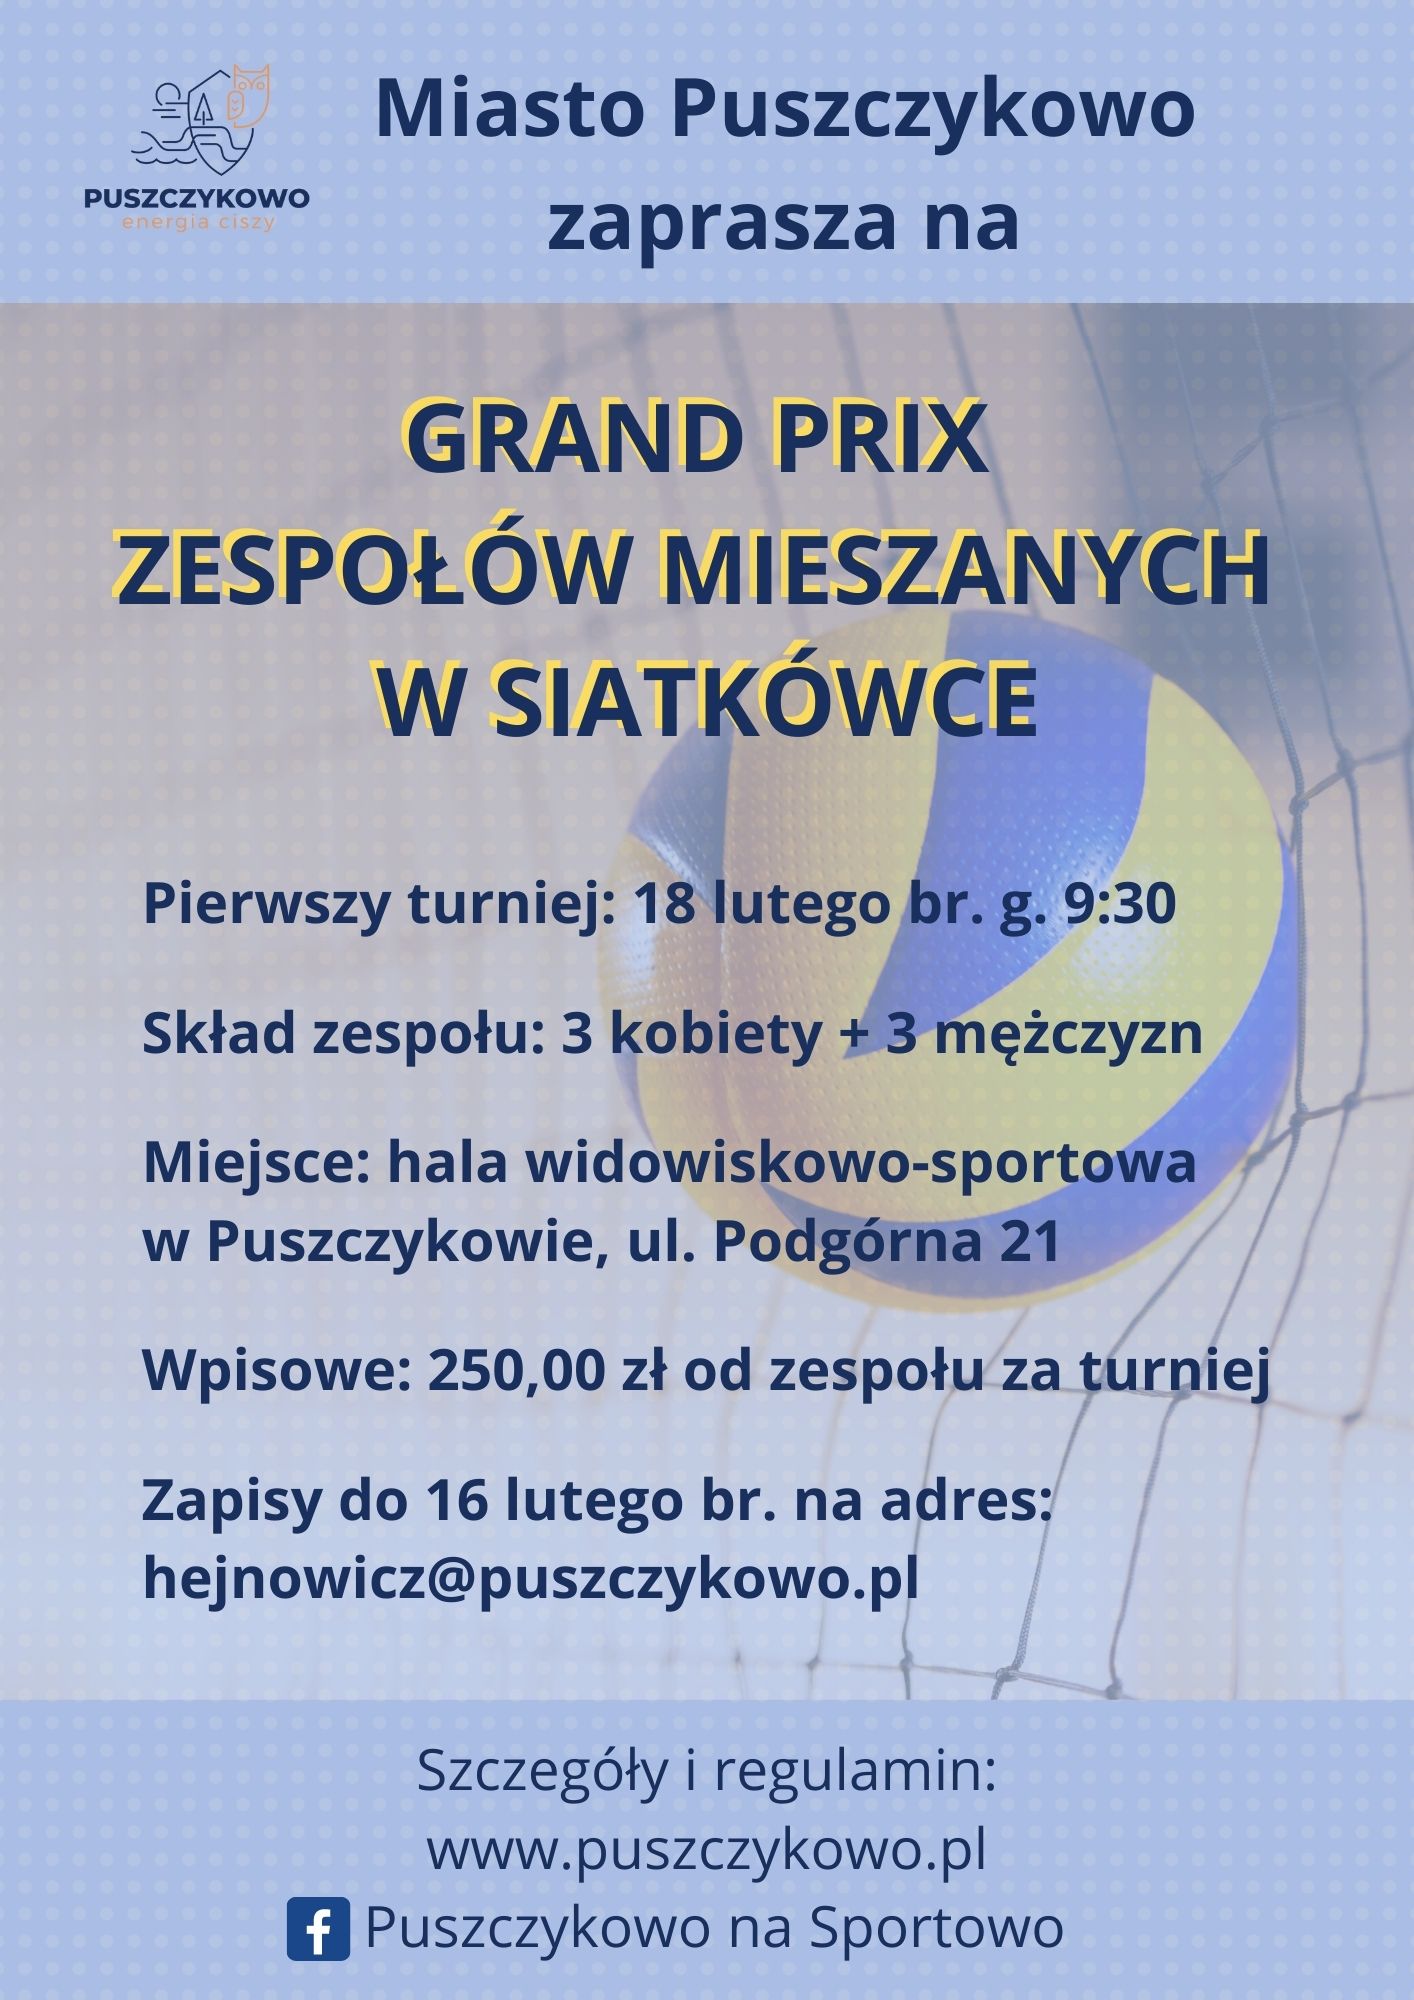 Zapraszamy na Grand Prix Zespołów Mieszanych w siatkówce - zapisy do 16 lutego br.